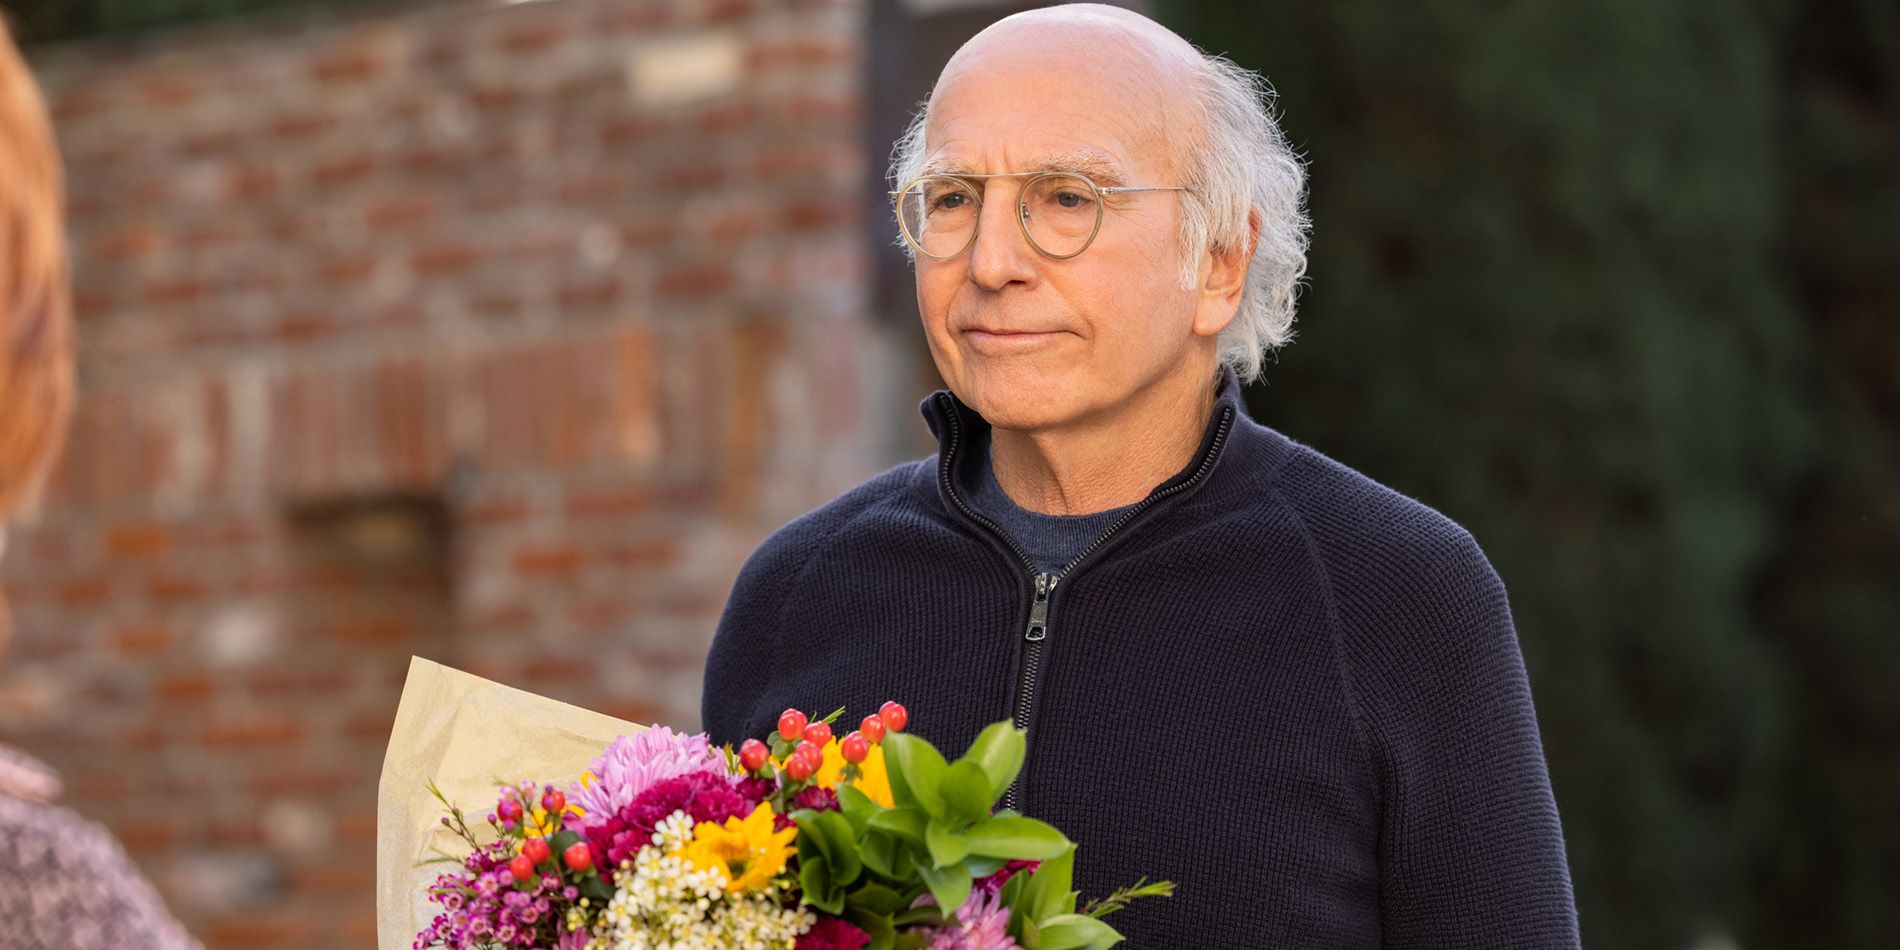 Larry David parece irritado enquanto segura flores na 11ª temporada de Curb Your Enthusiasm